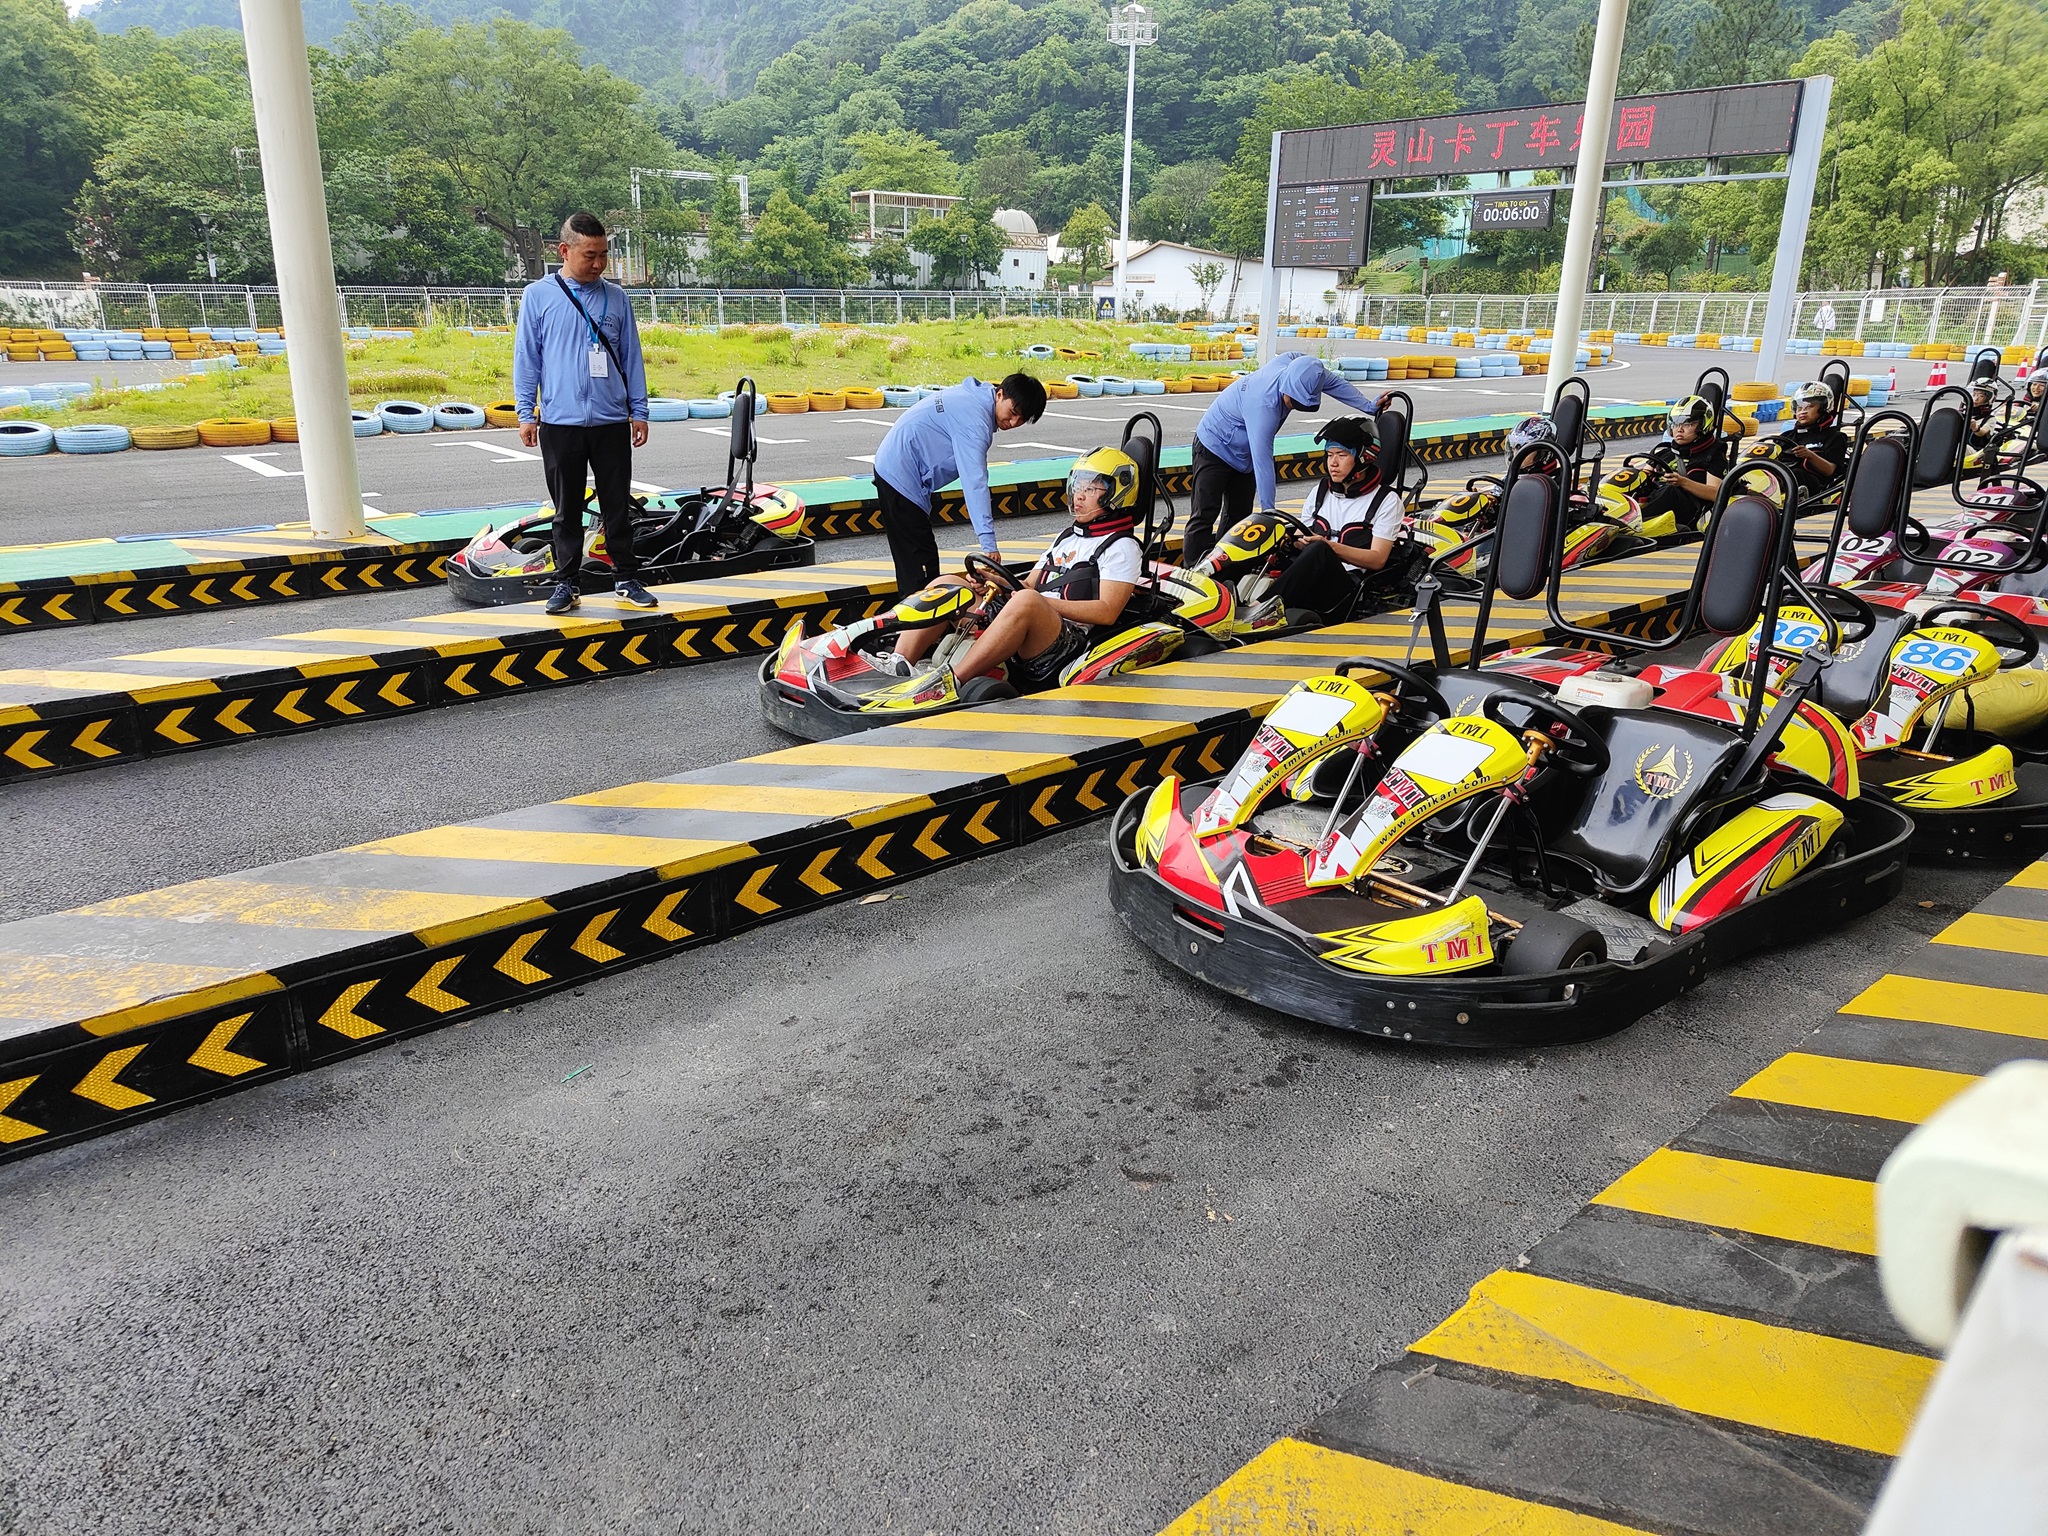 Go-Kart Racing